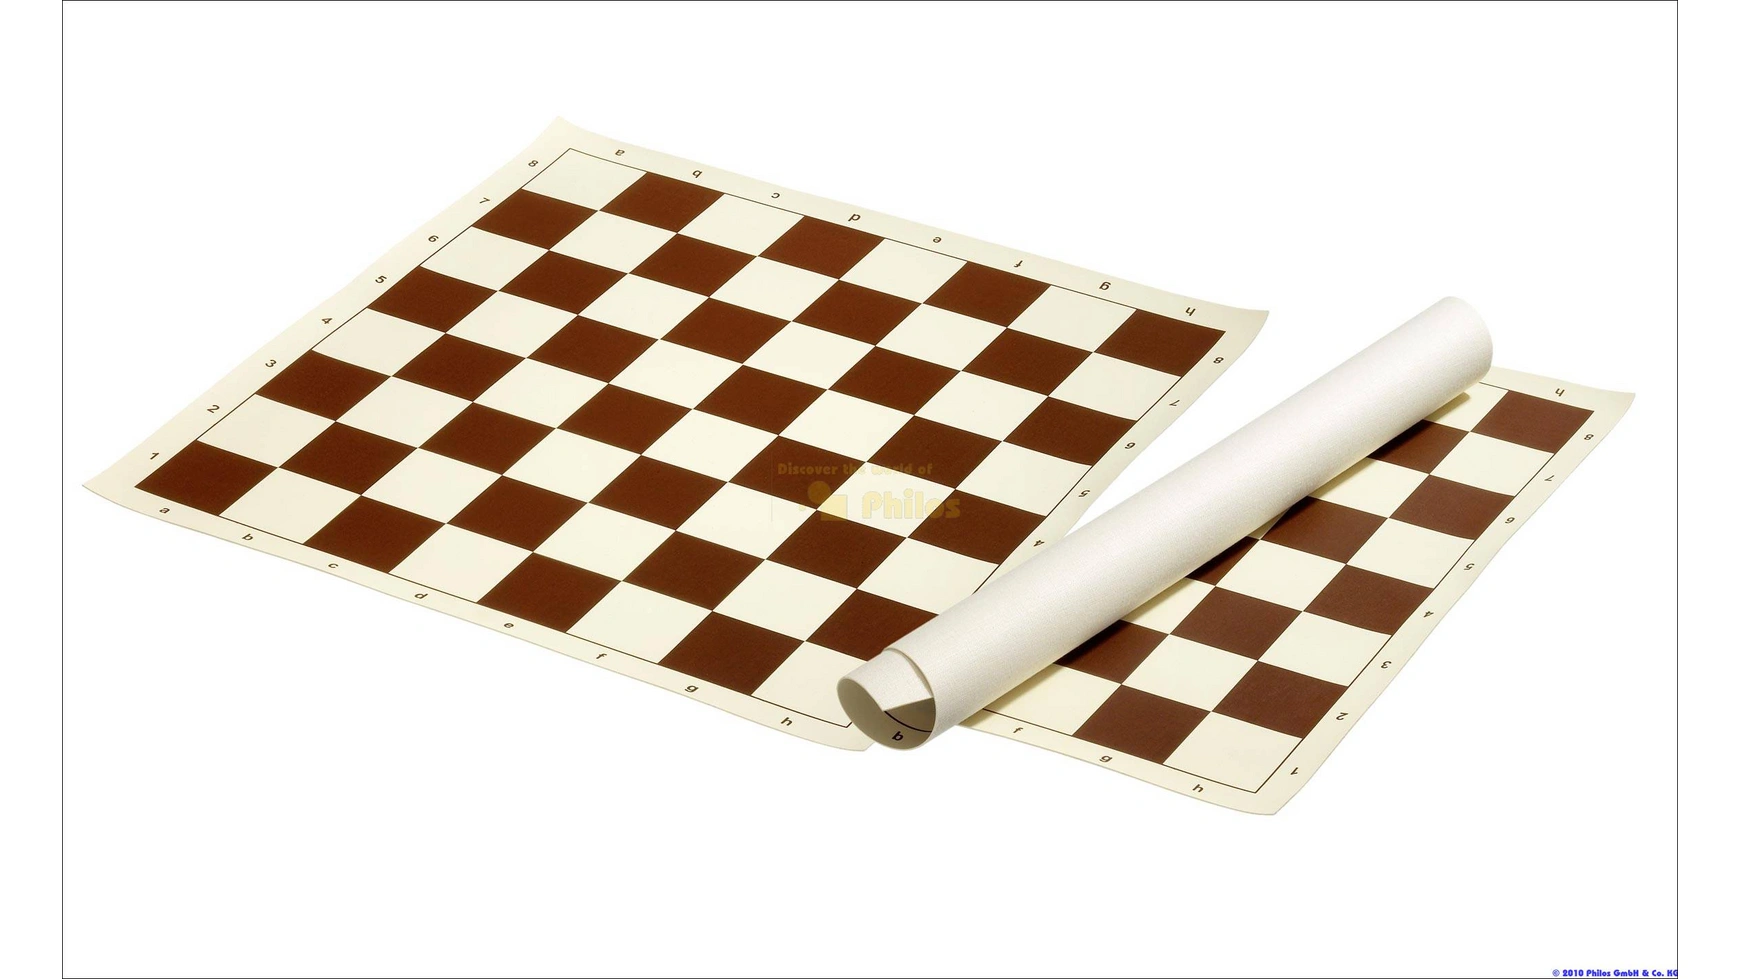 

Шахматная доска, поле 48 мм, коричневое/кремовое